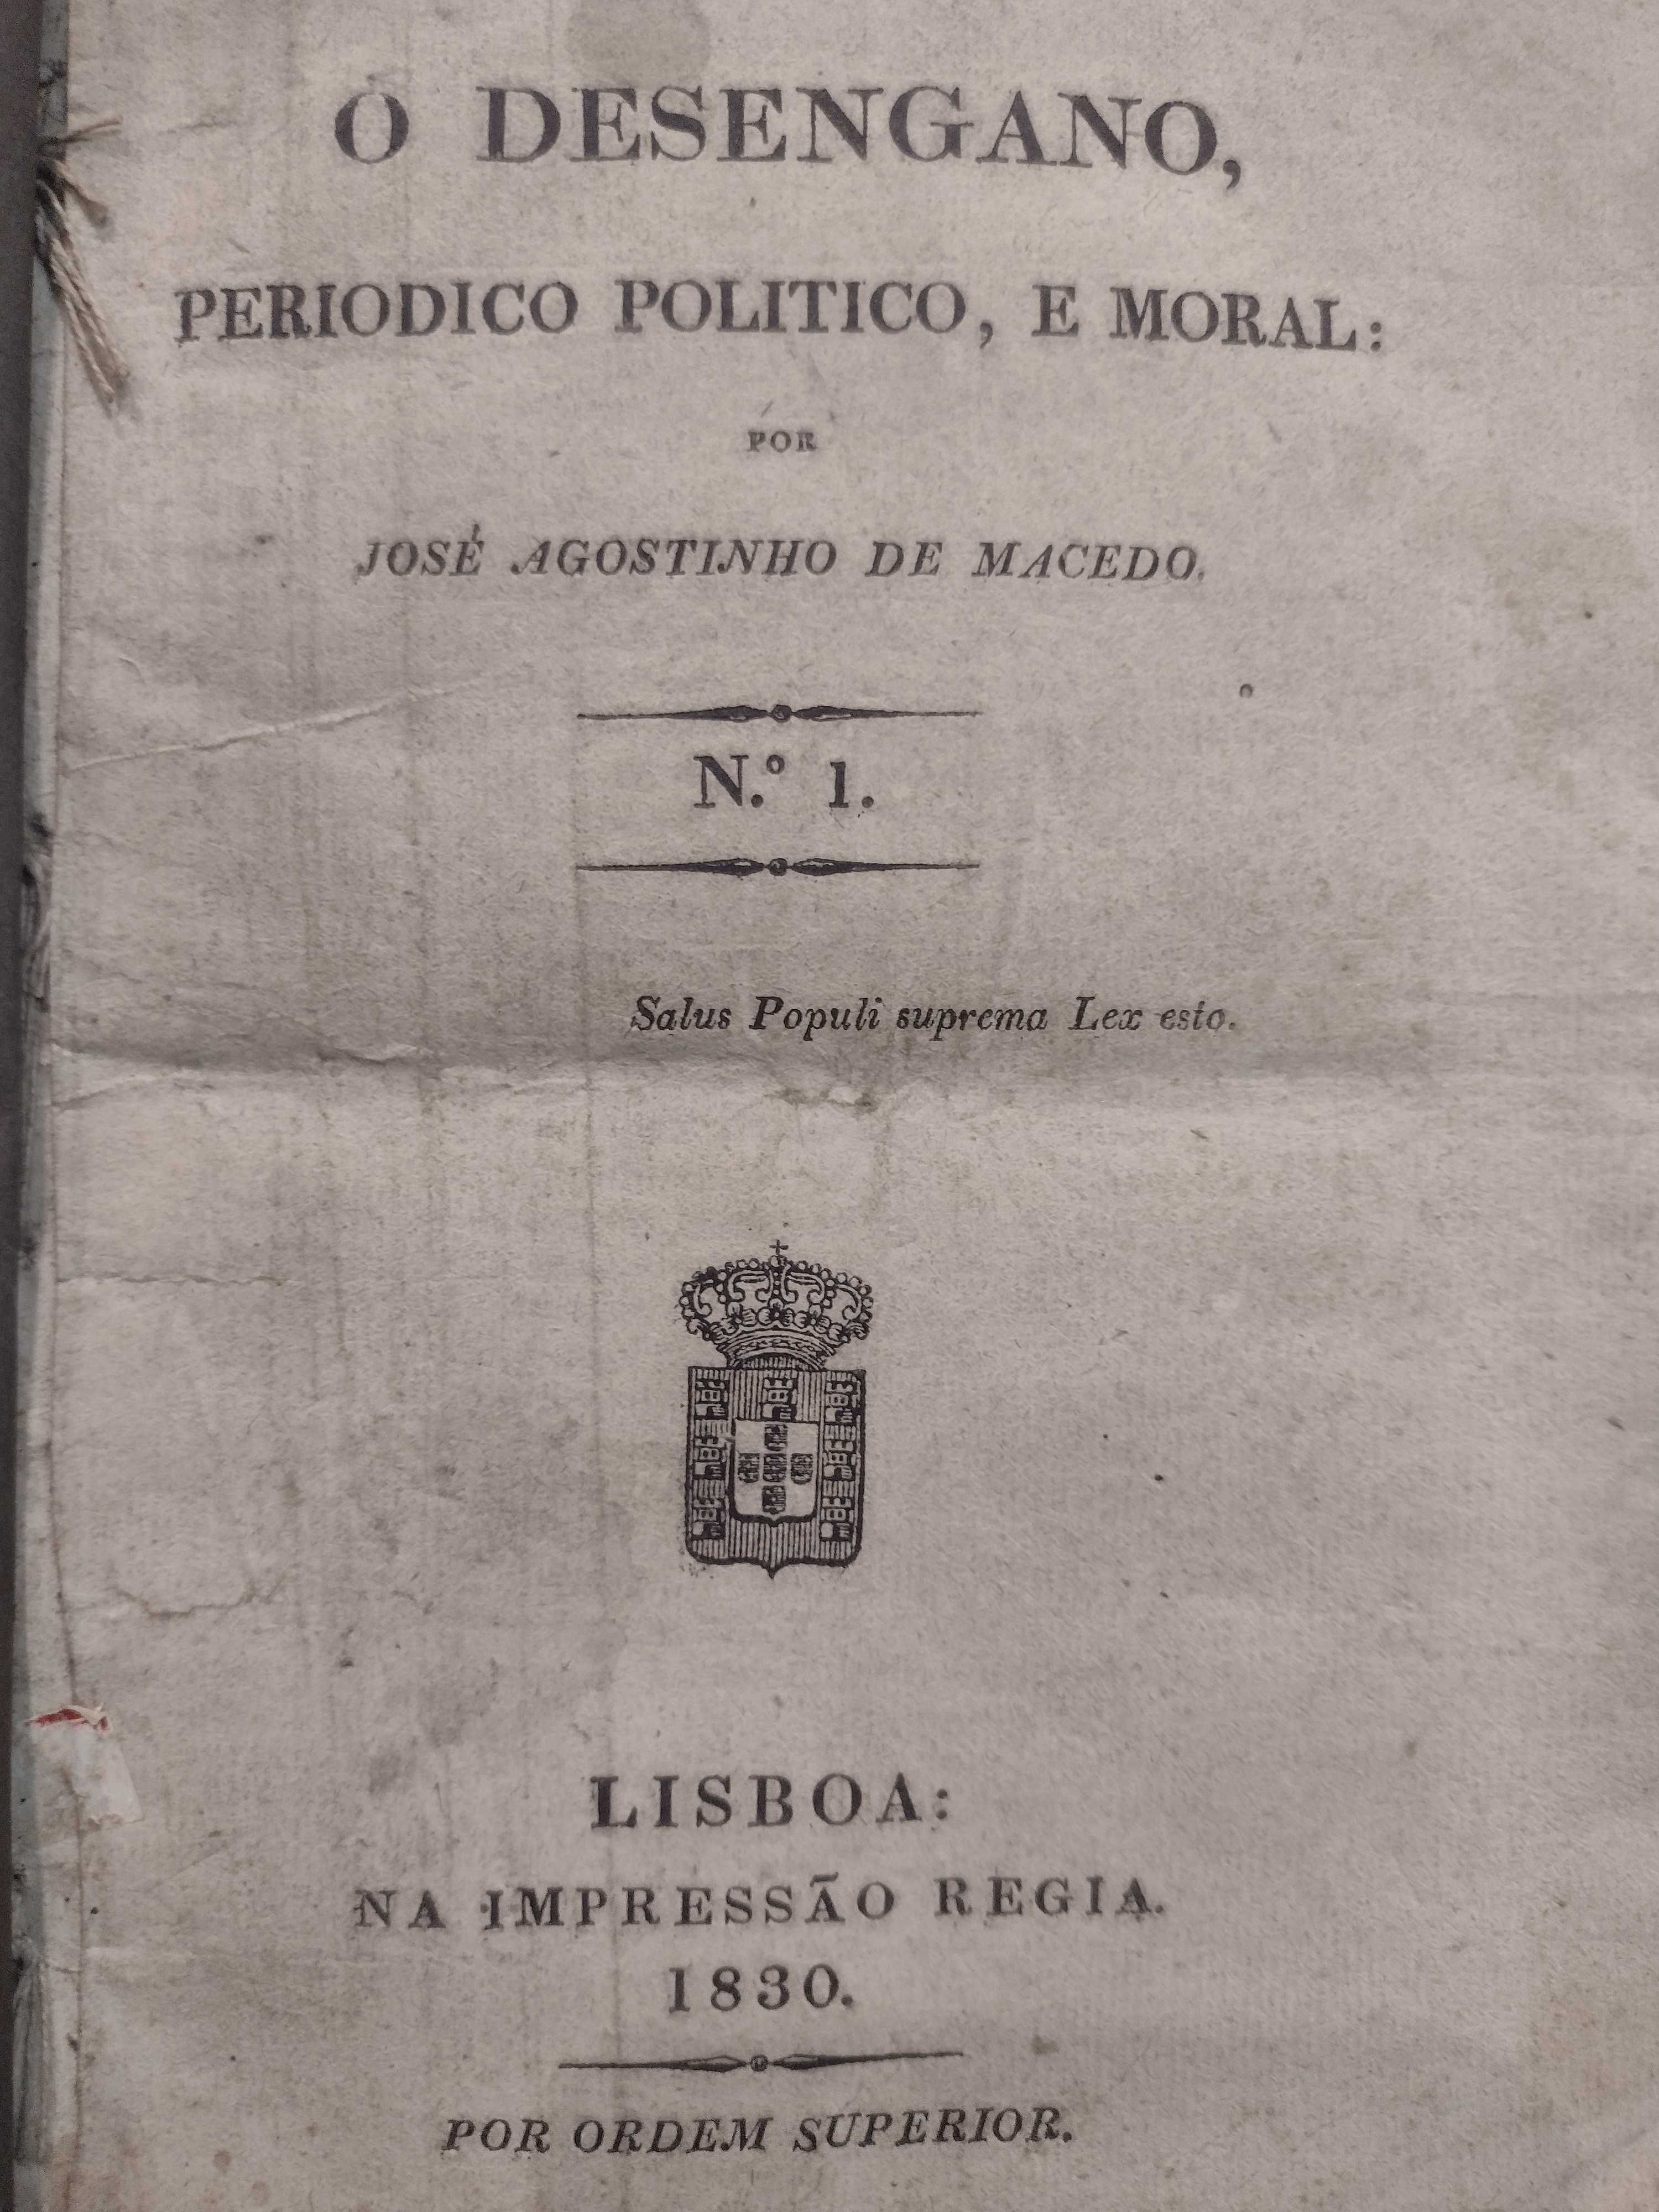 O Desengano Periodico Politico e Moral - 1830 José Agostinho de Macedo